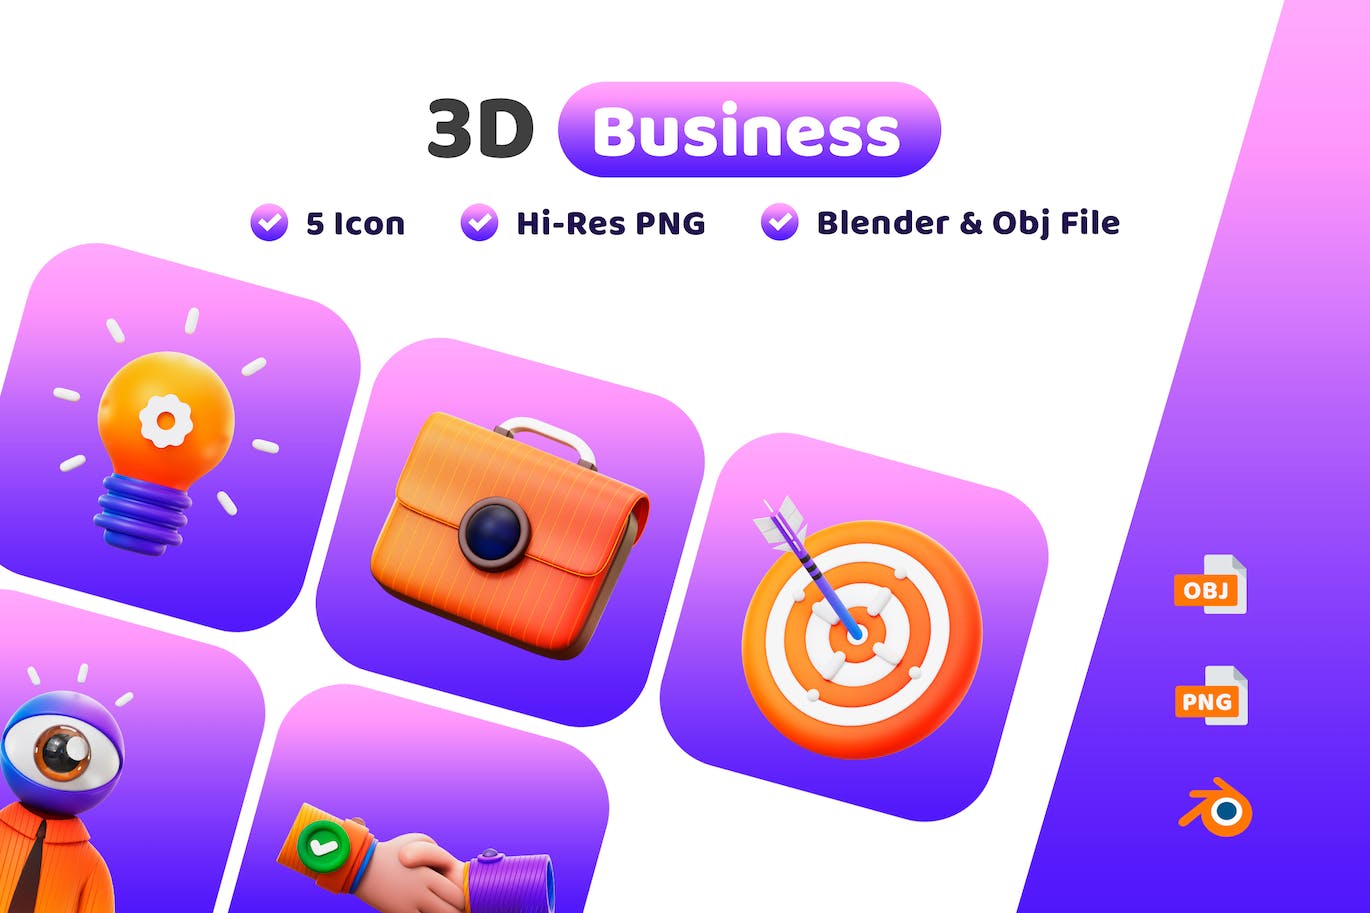 商业业务元素3D图标 Business 3D Icon 图标素材 第1张